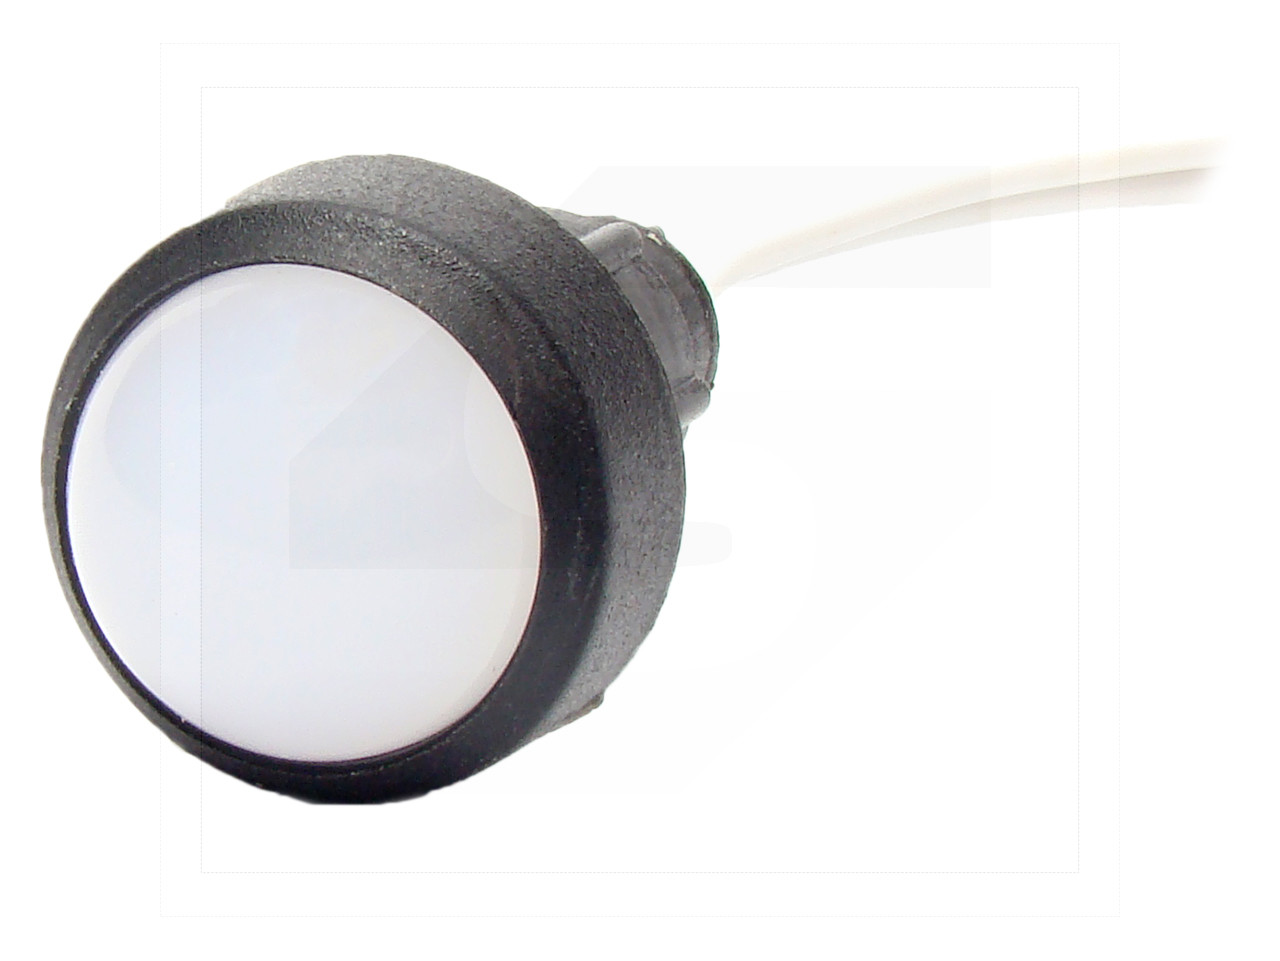 Lampka diodowa KLP-20/W 230VAC/DC typu LED 230V (klosz 20mm)/white